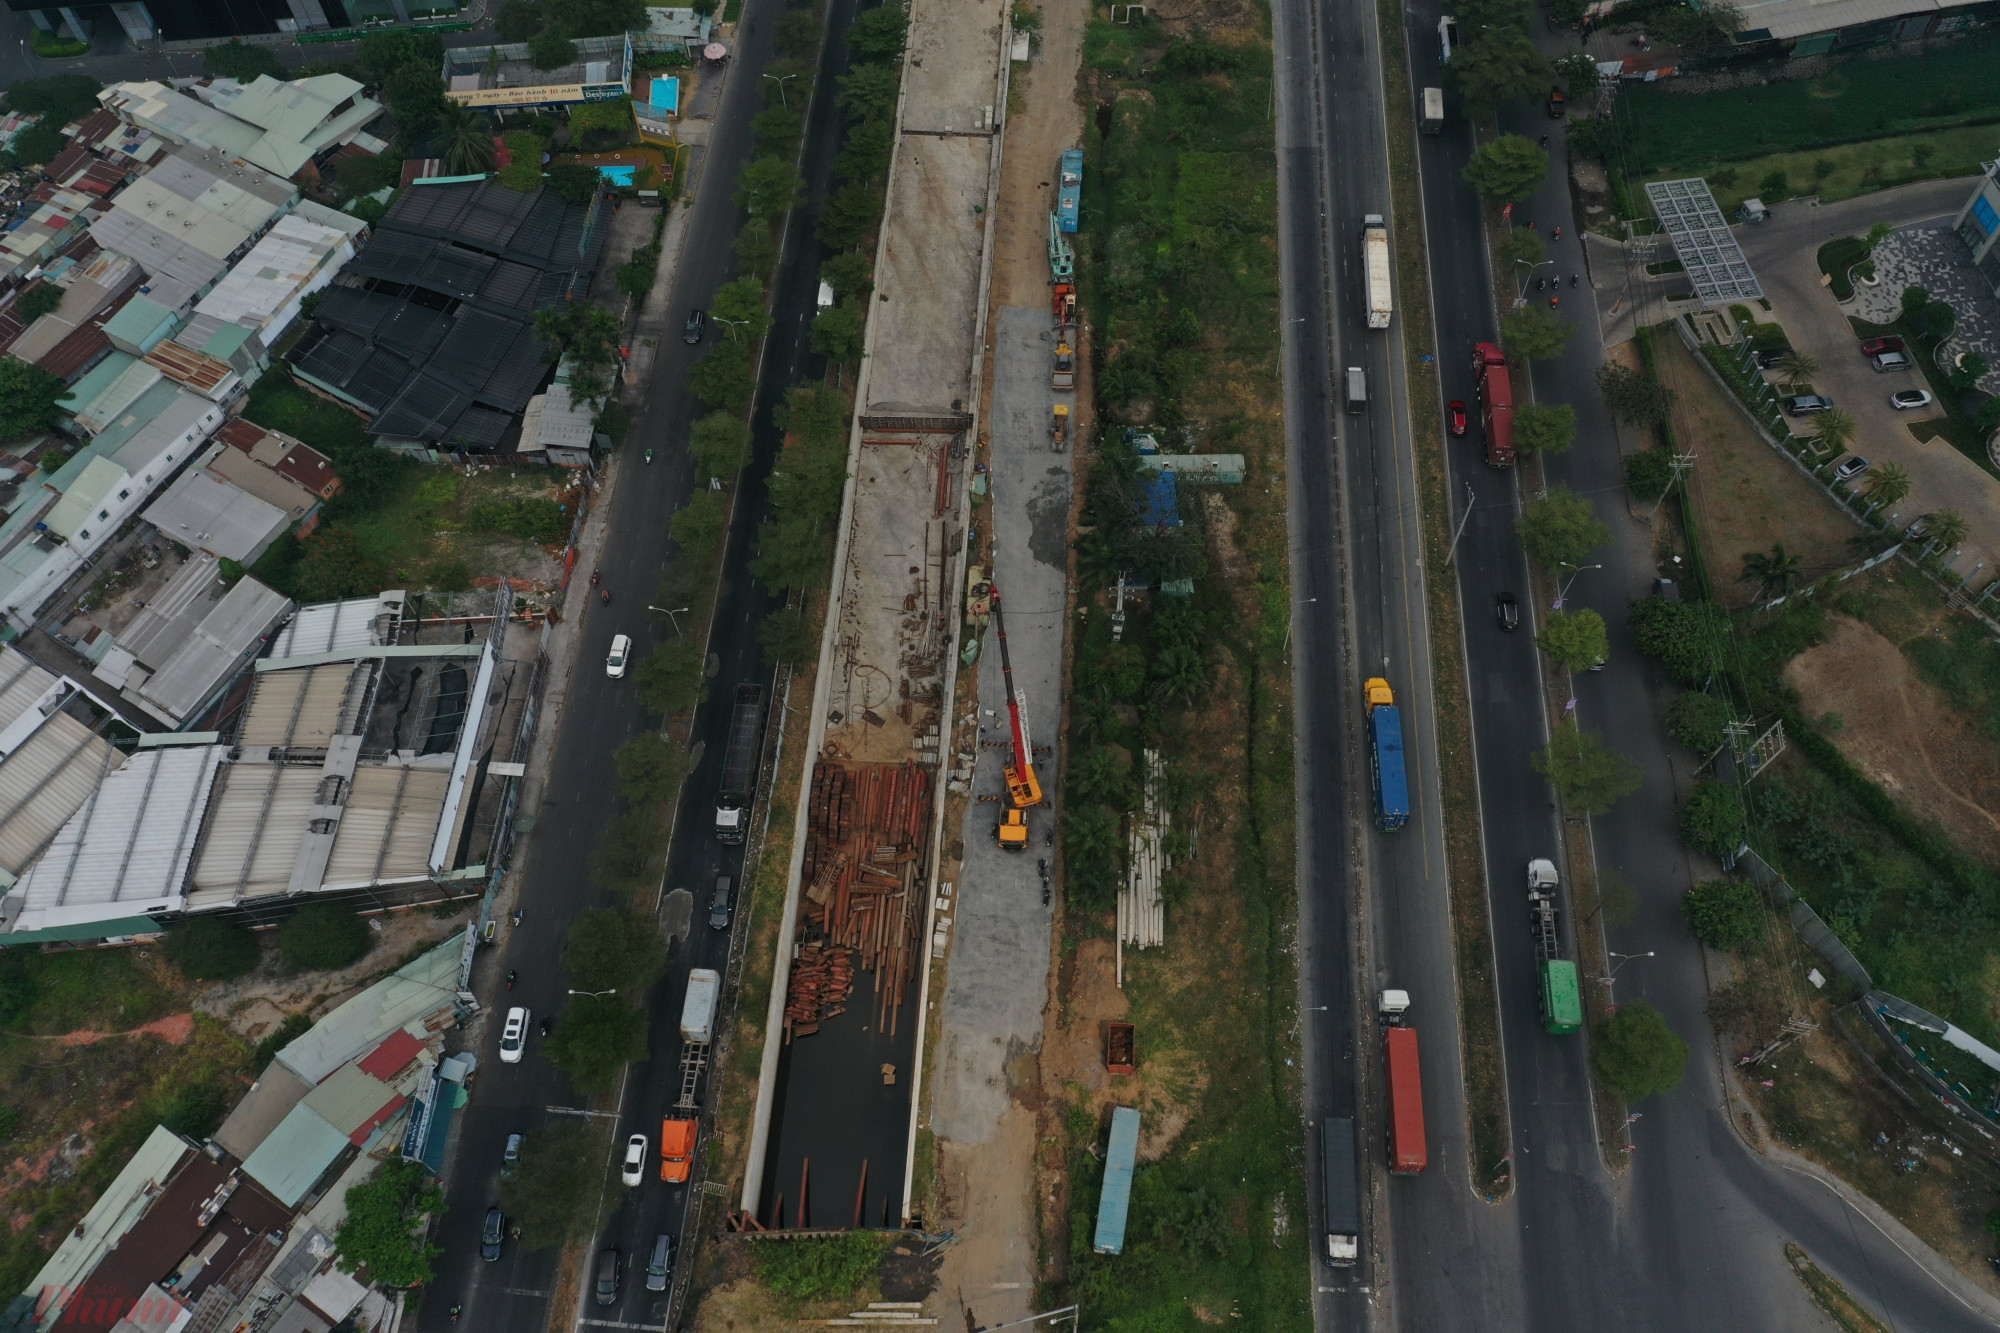 Dự án khởi công vào ngày 22/4/2020, dự kiến hoàn thành vào quý 4/2023, được kỳ vọng kéo giảm ùn tắc giao thông đang ngày một gia tăng tại khu vực nam Sài Gòn. Tuy nhiên, đến nay, khối lượng thi công công trình chỉ đạt khoảng 34,12% do công tác di dời hạ tầng kỹ thuật thực hiện rất chậm.